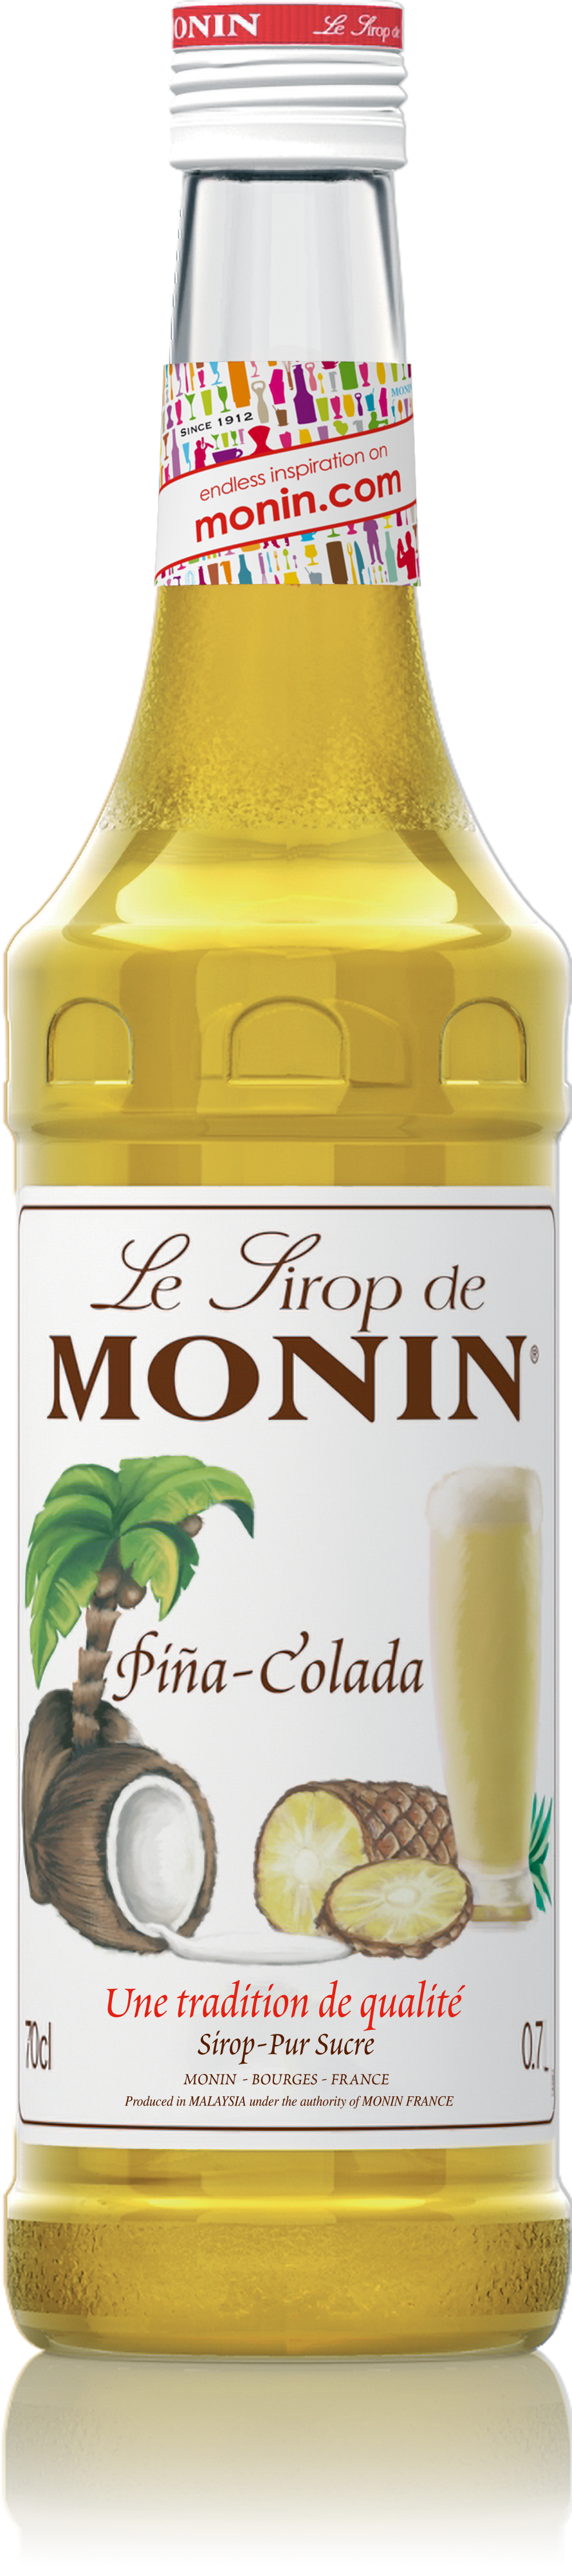 Les sirops Monin : l'art d'accommoder cocktails et cafés ! - La